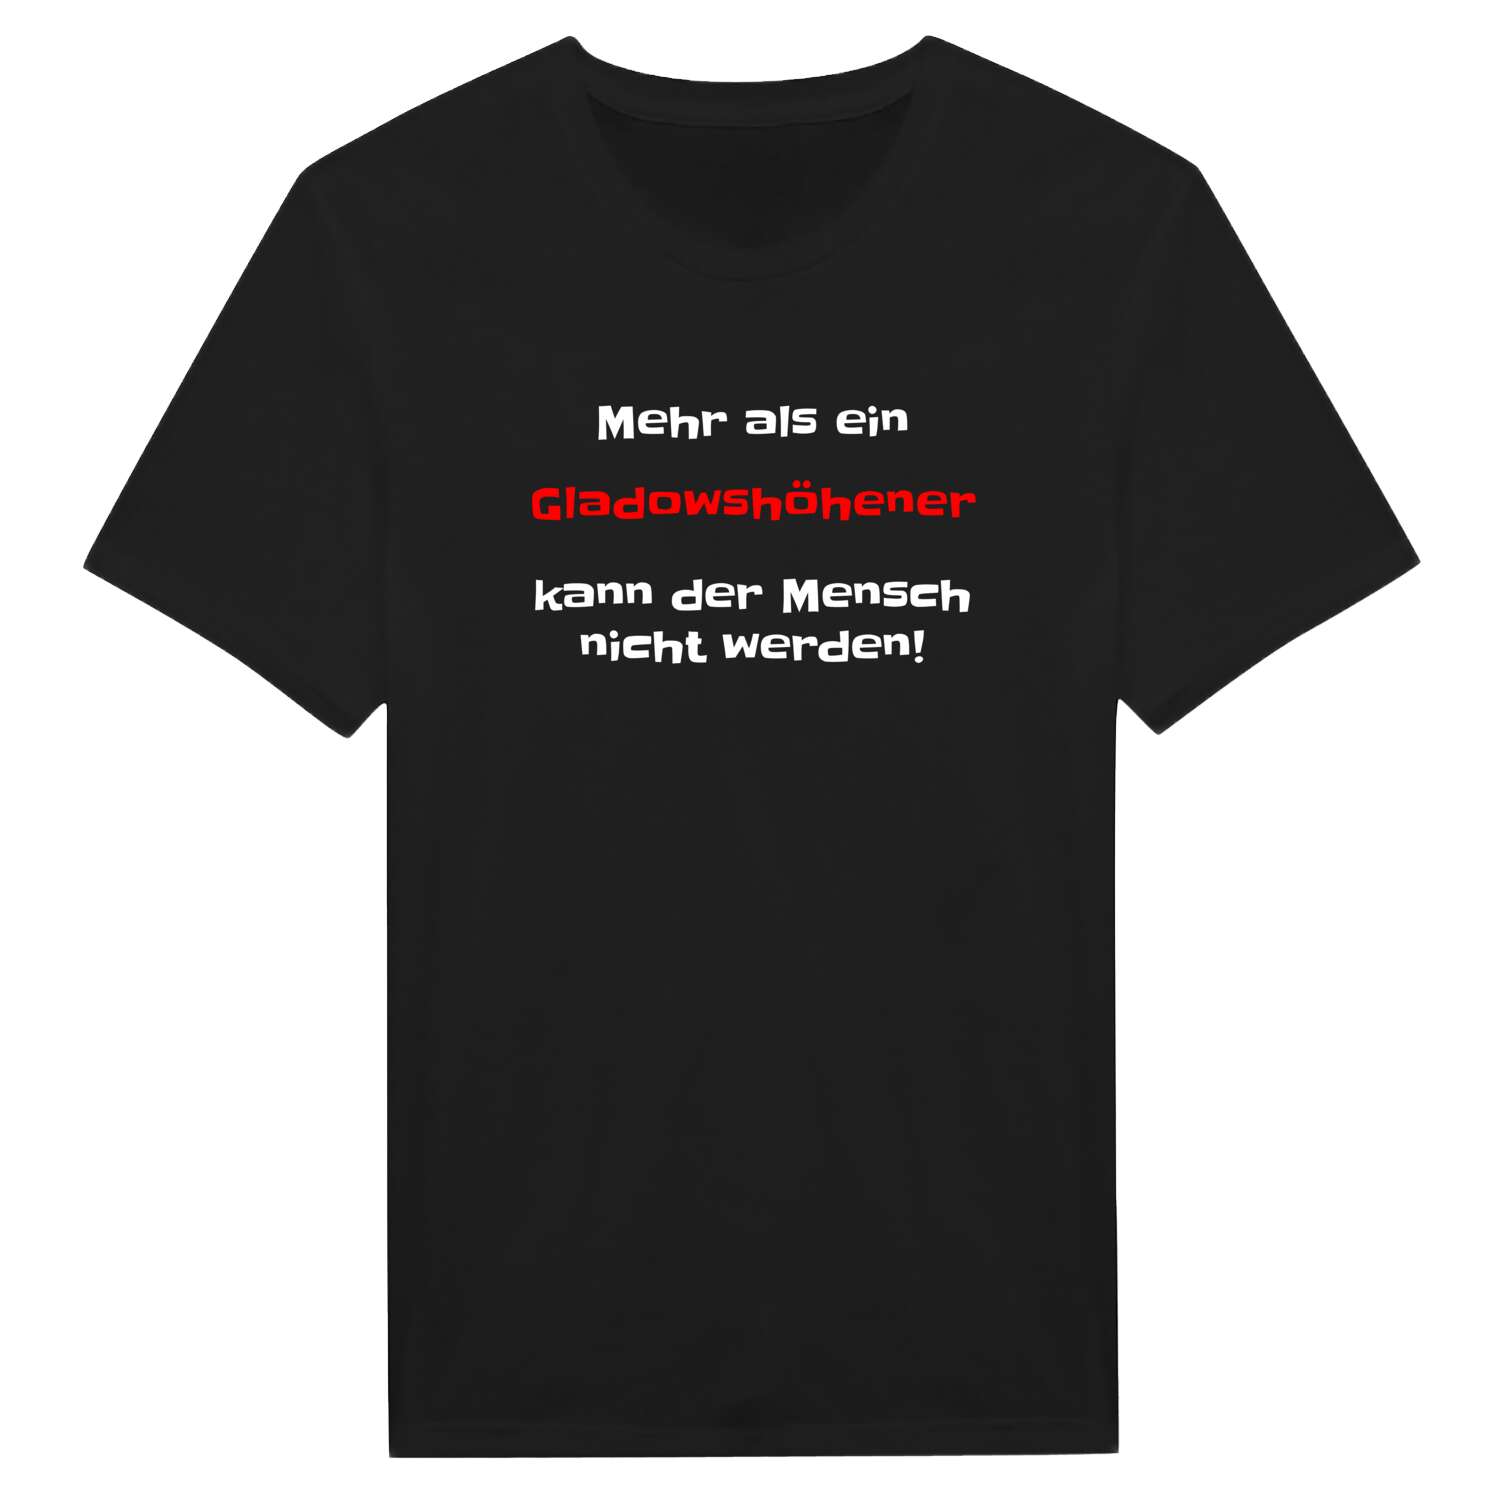 Gladowshöhe T-Shirt »Mehr als ein«